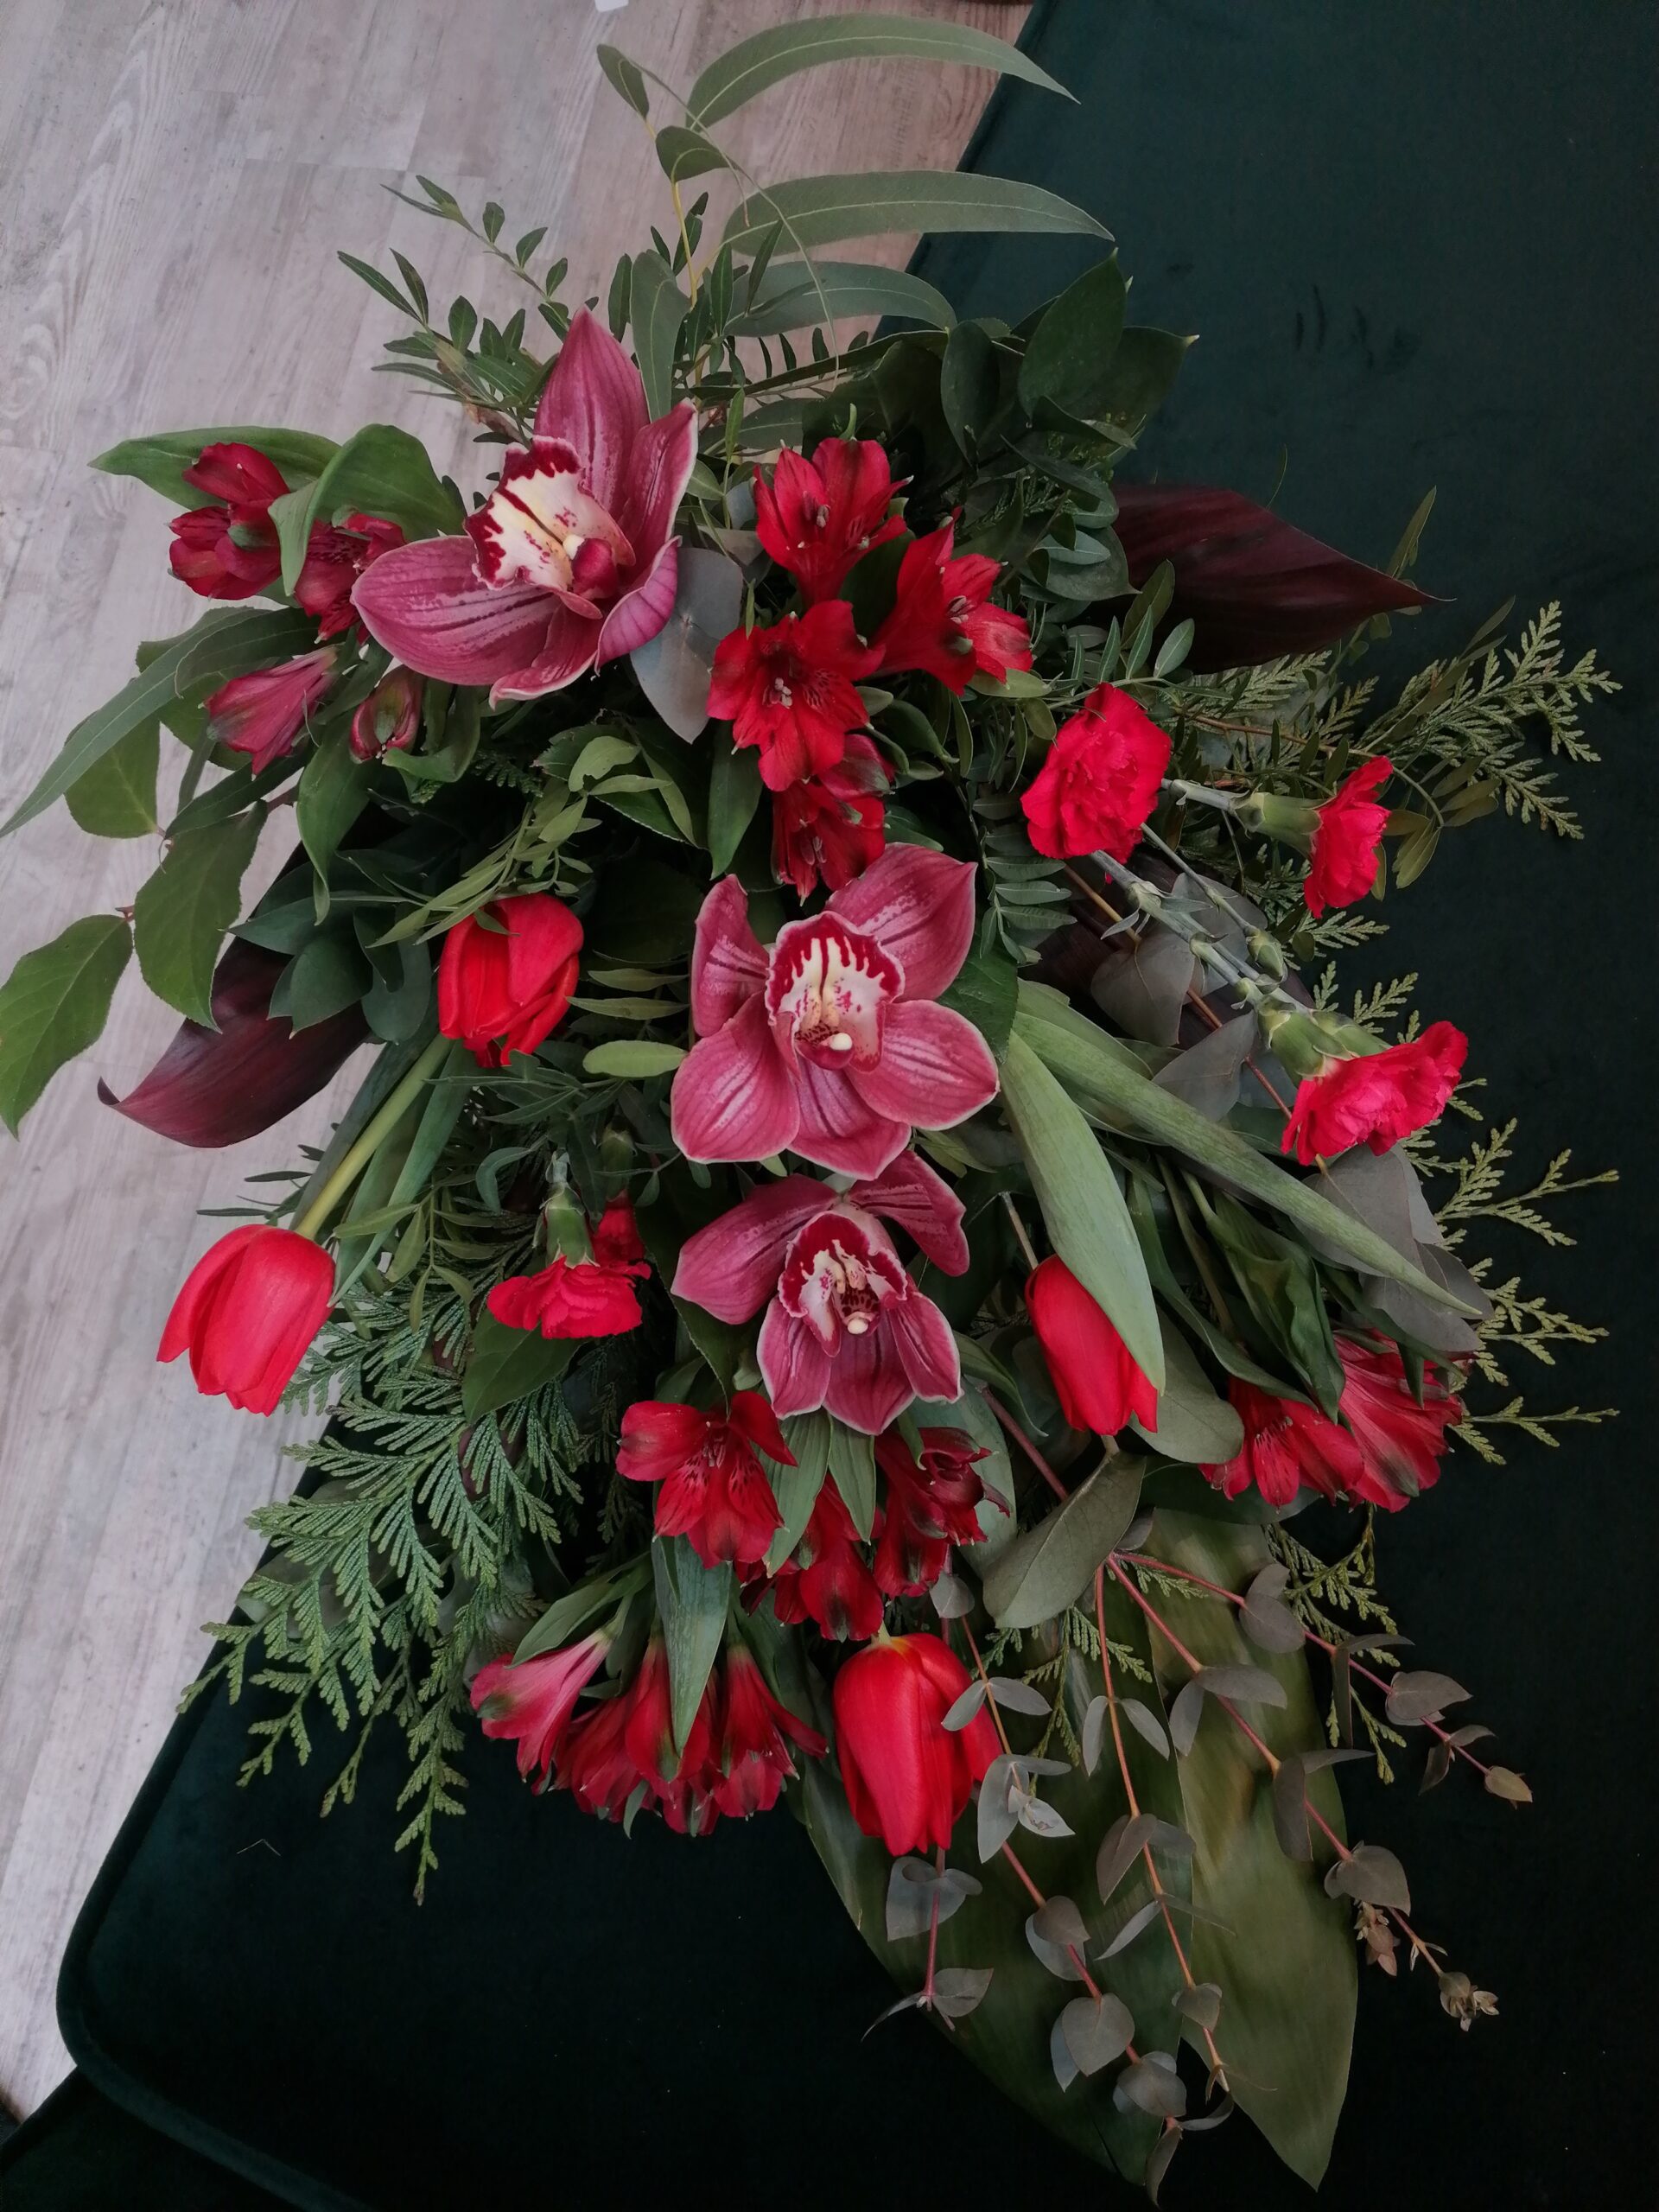 Wiązanka w czerwieni to elegancki bukiet pożegnalny, zarówno dla kobiety jak i mężczyzny. Składa się z storczyków, tulipanów, alstremerii i goździków w otoczeniu różnorodnej zieleni.